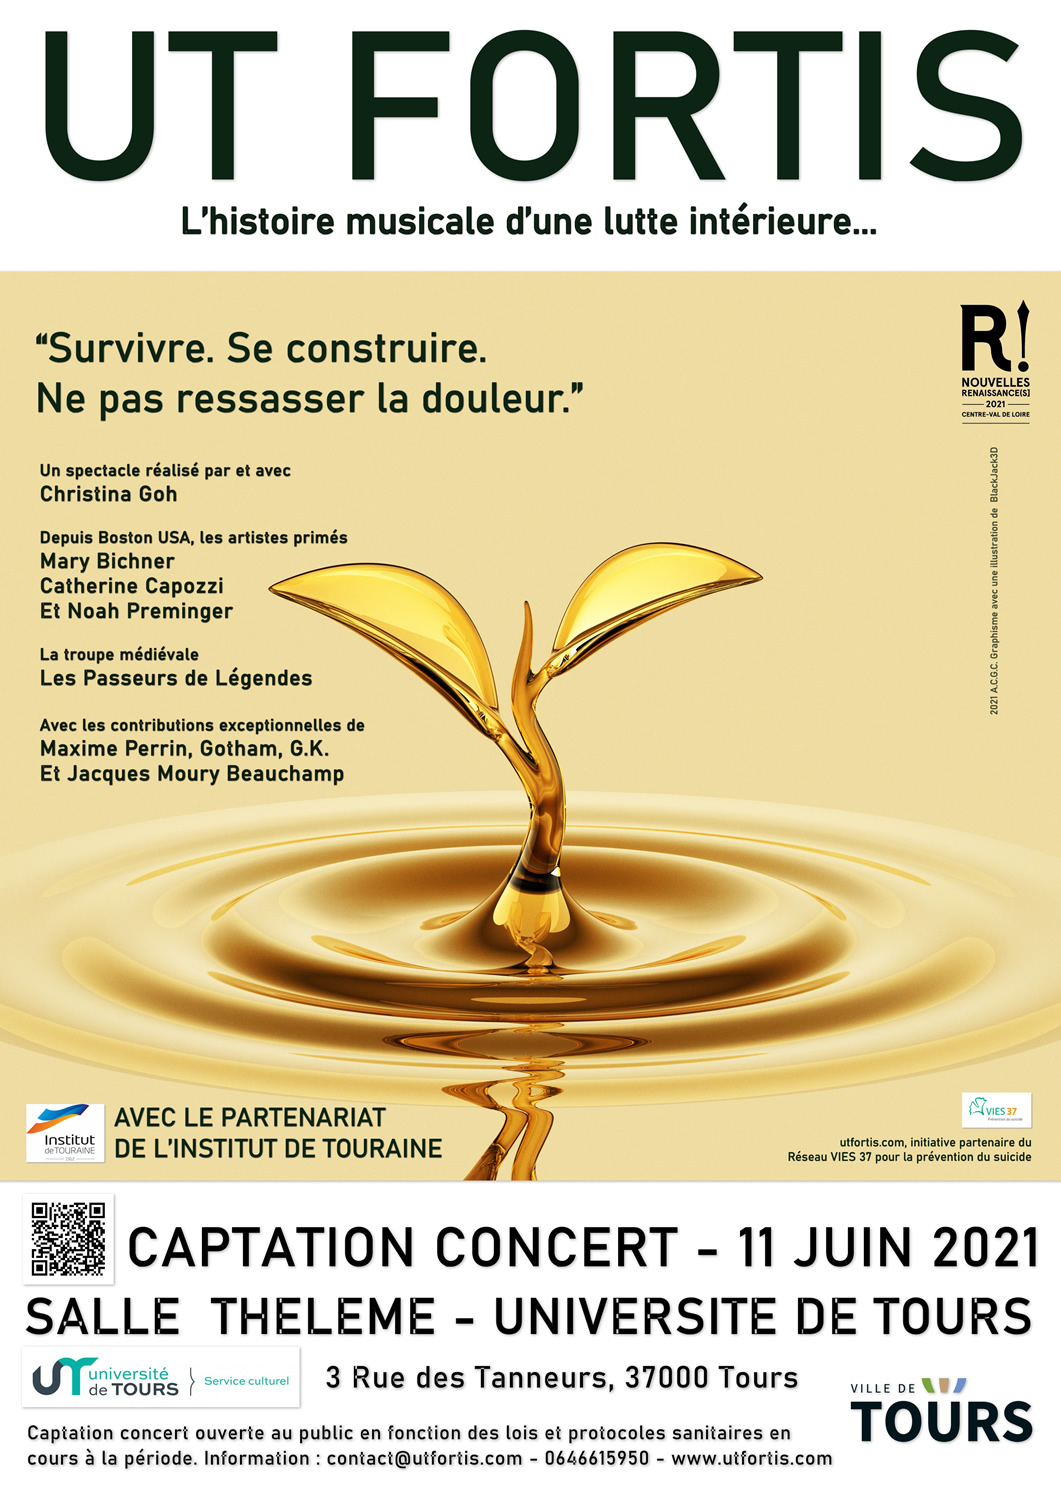 France : UT FORTIS, en captation concert le 11 juin 2021 à la Salle Thélème – Université de Tours